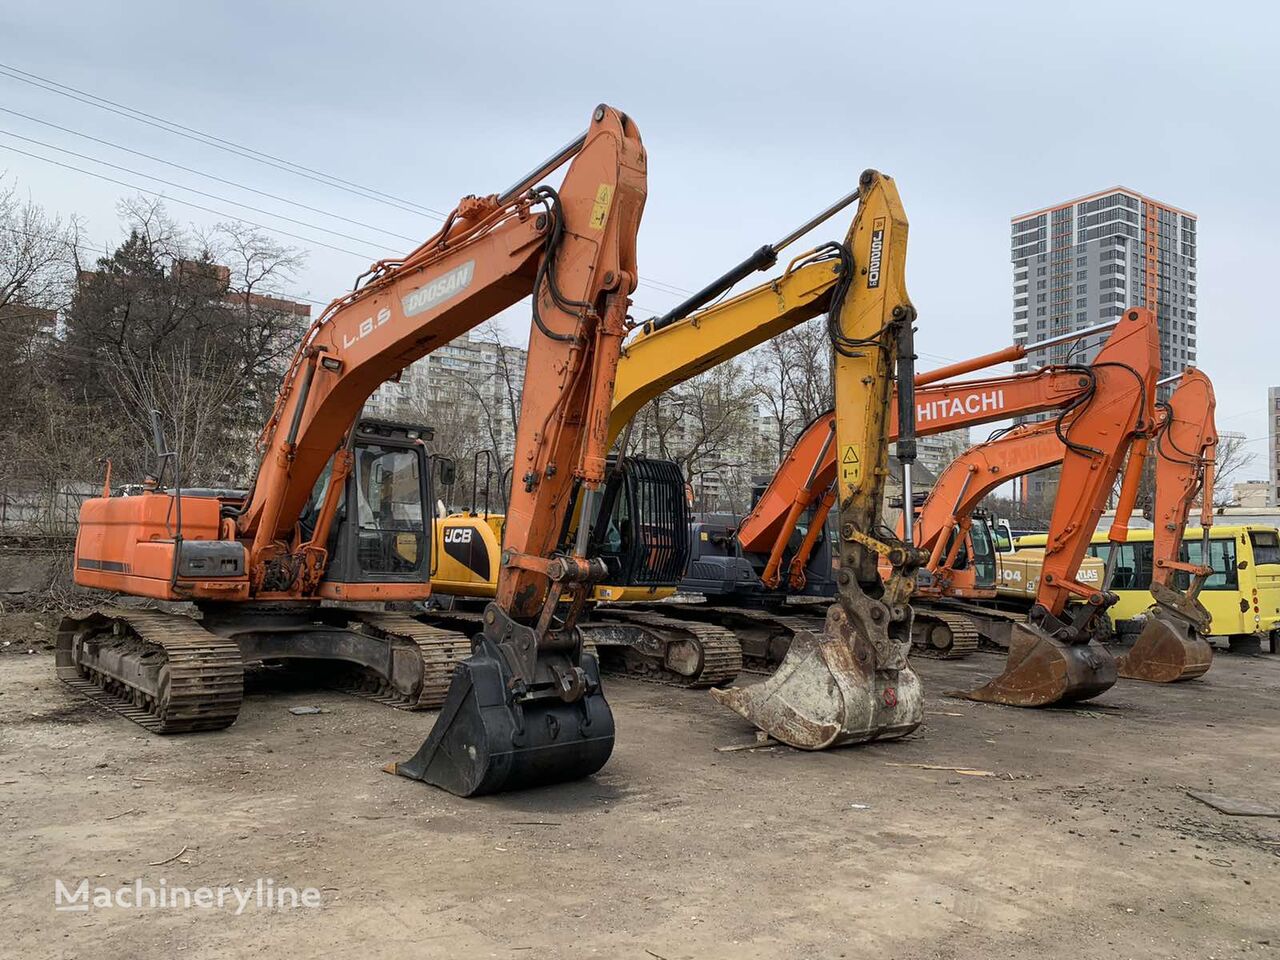 Doosan DX 225 tracked excavator